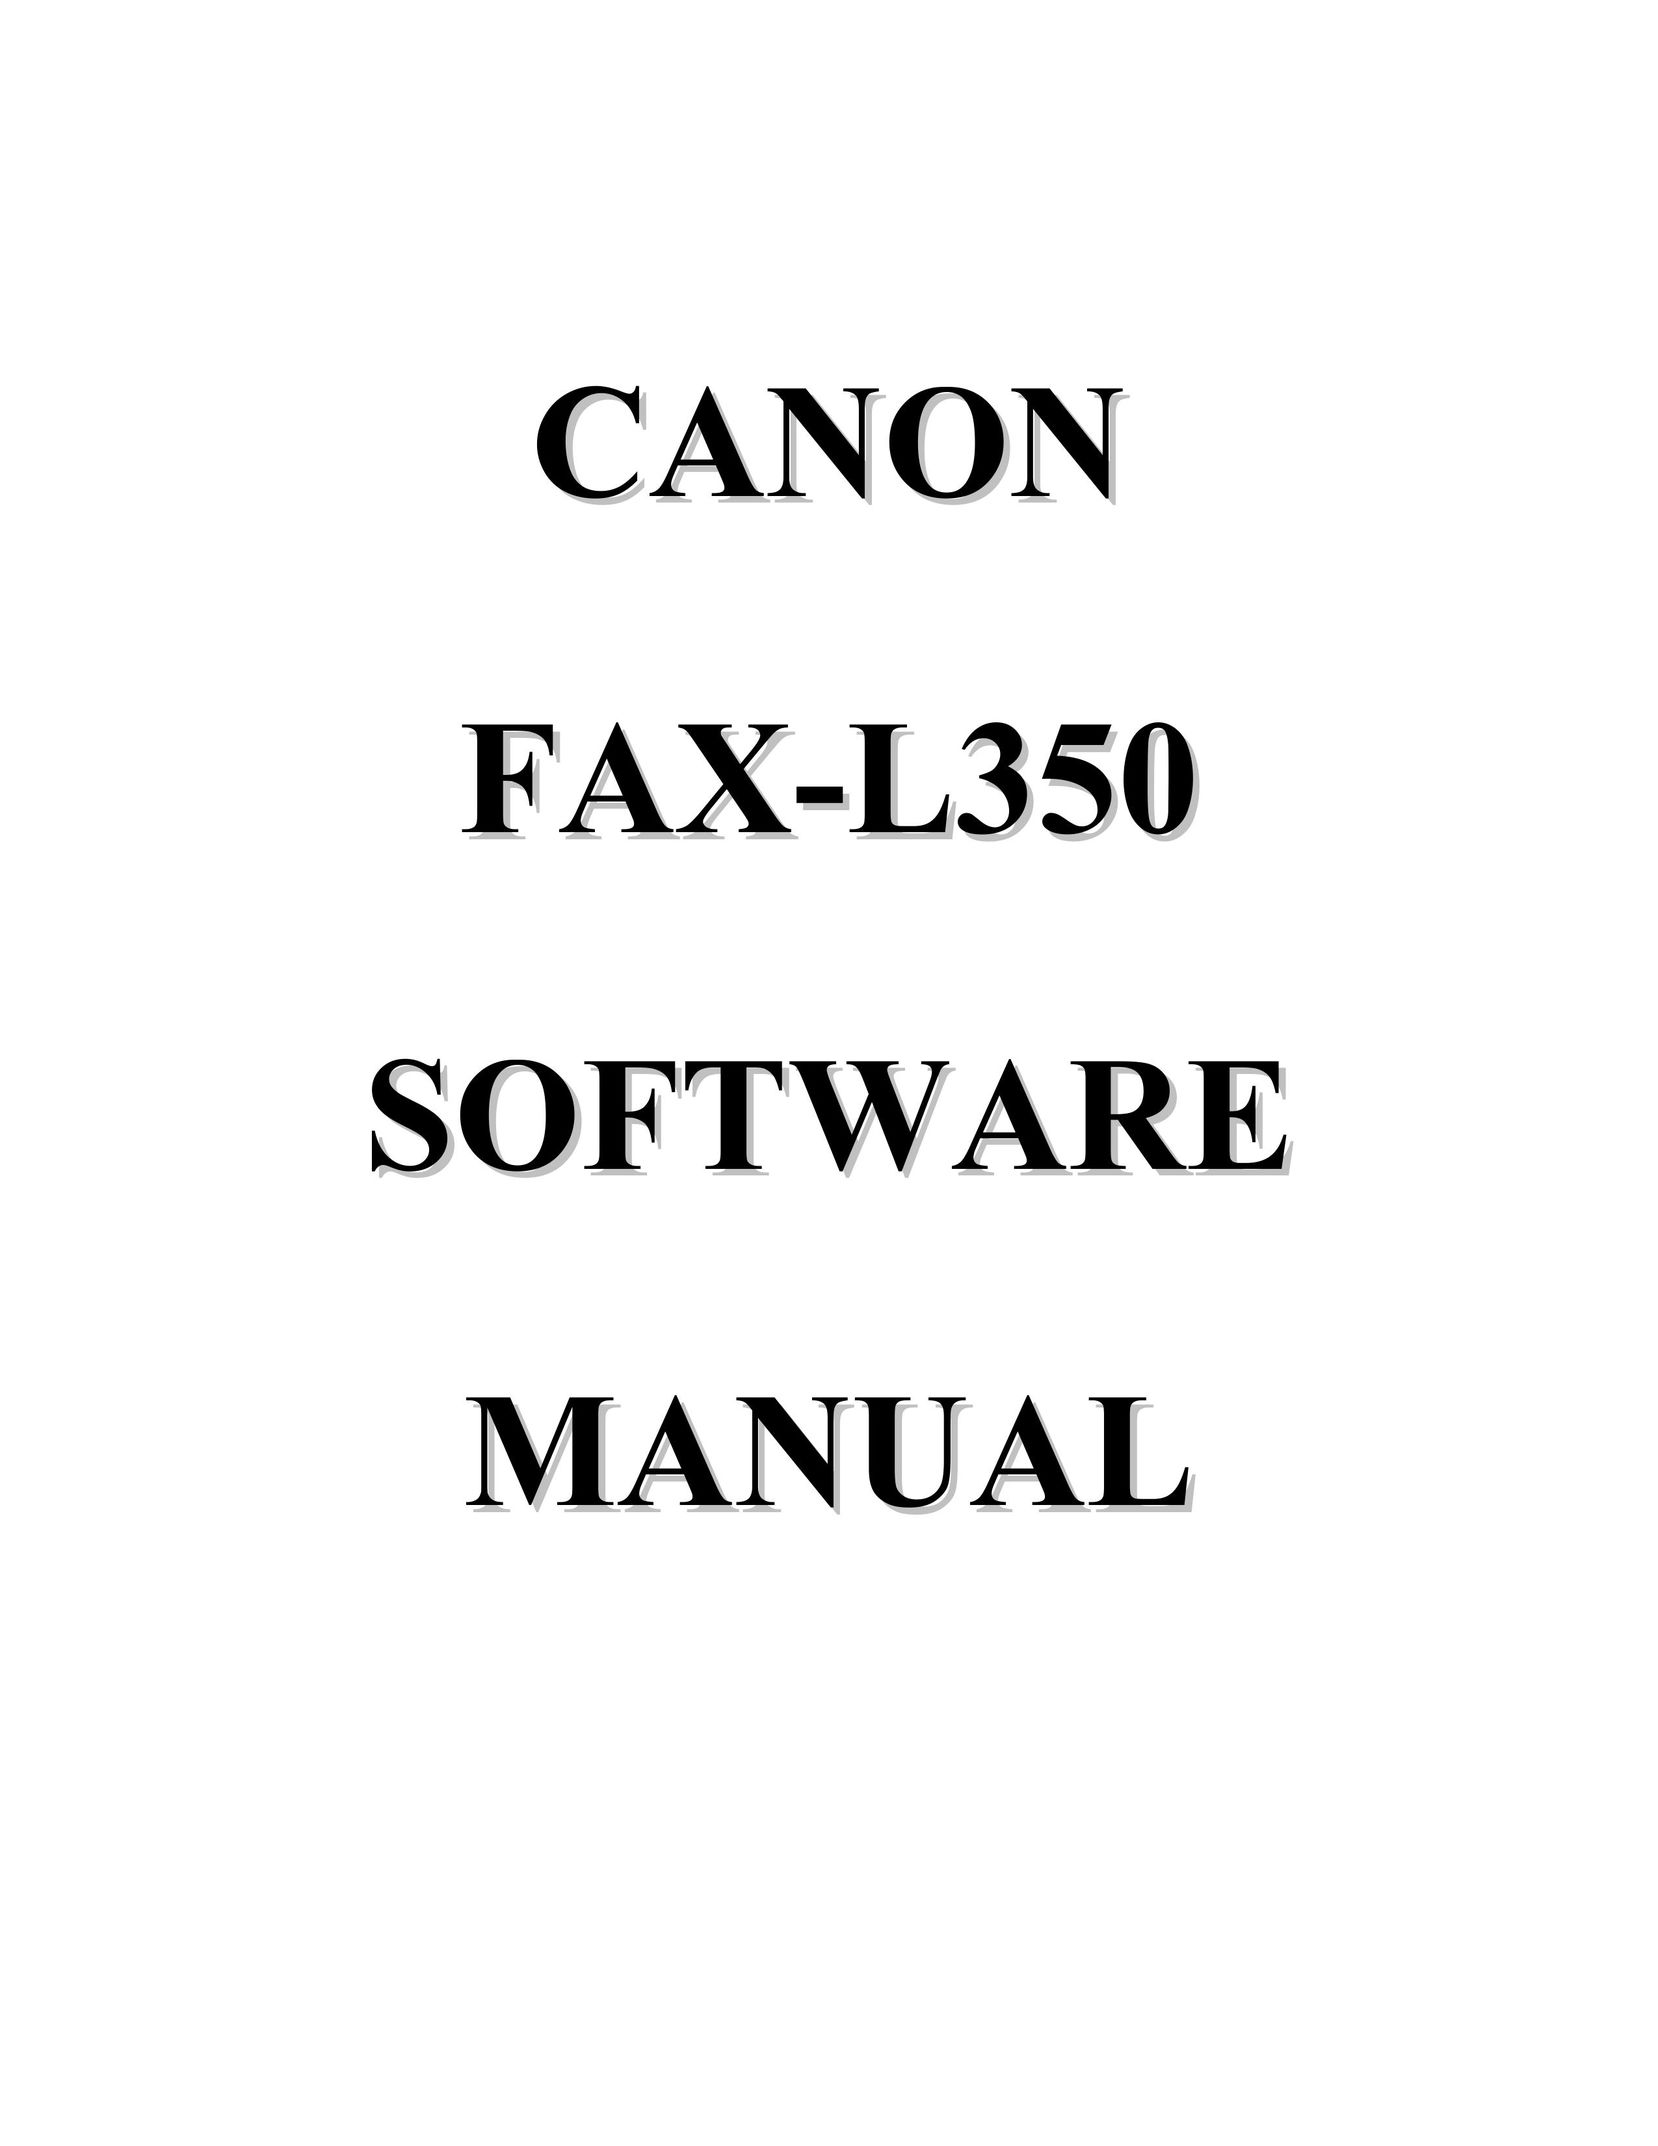 Canon FAX-L350 Fax Machine User Manual